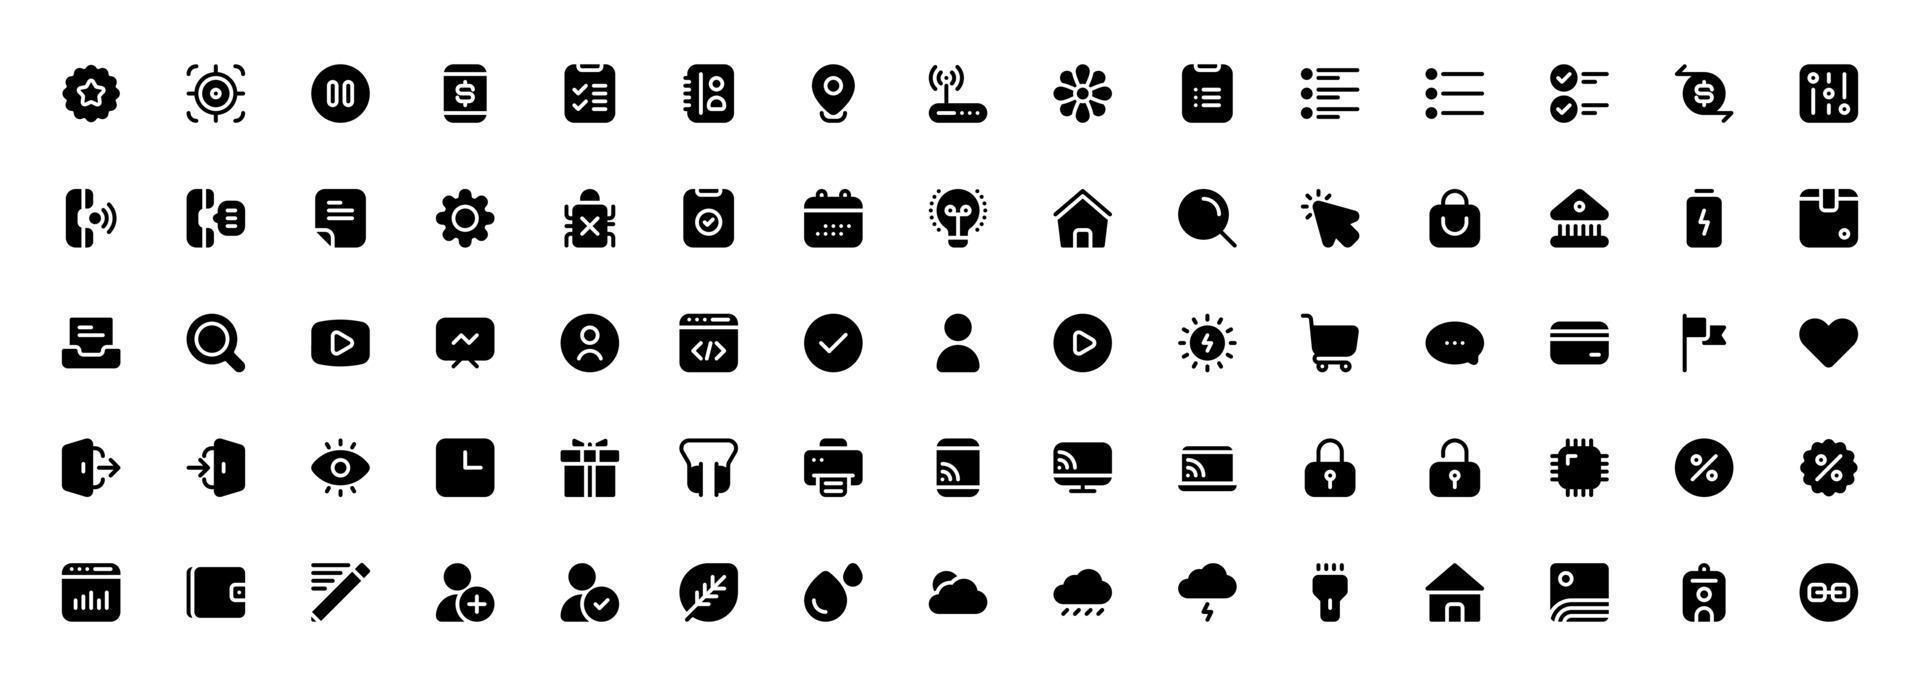 conjunto de iconos misceláneos estilo sólido. interfaz de usuario, finanzas, banca, naturaleza y más vector